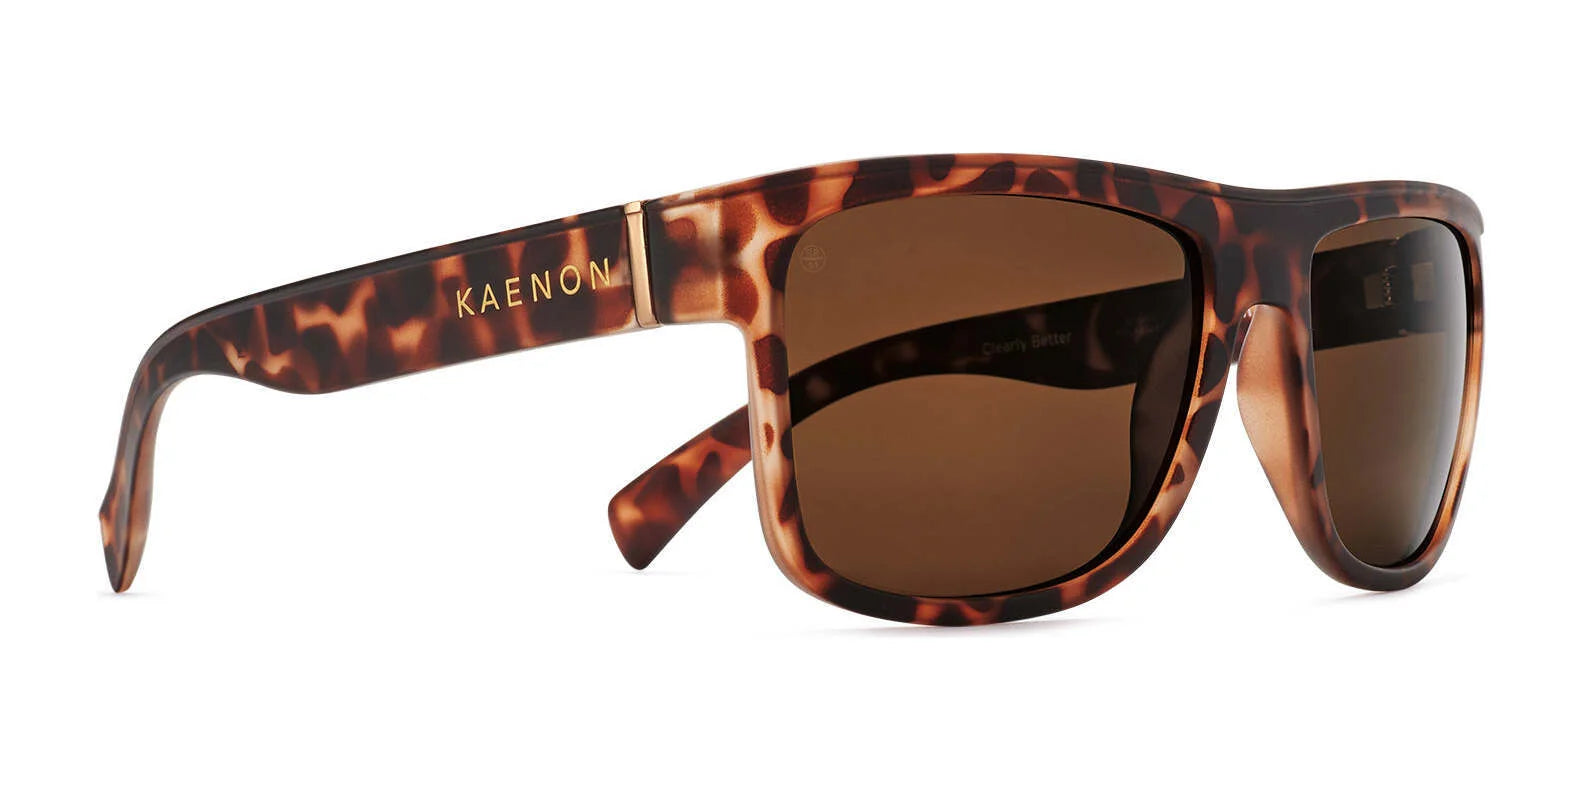 Kaenon ARROYO Sunglasses 50 / Matte Tortoise